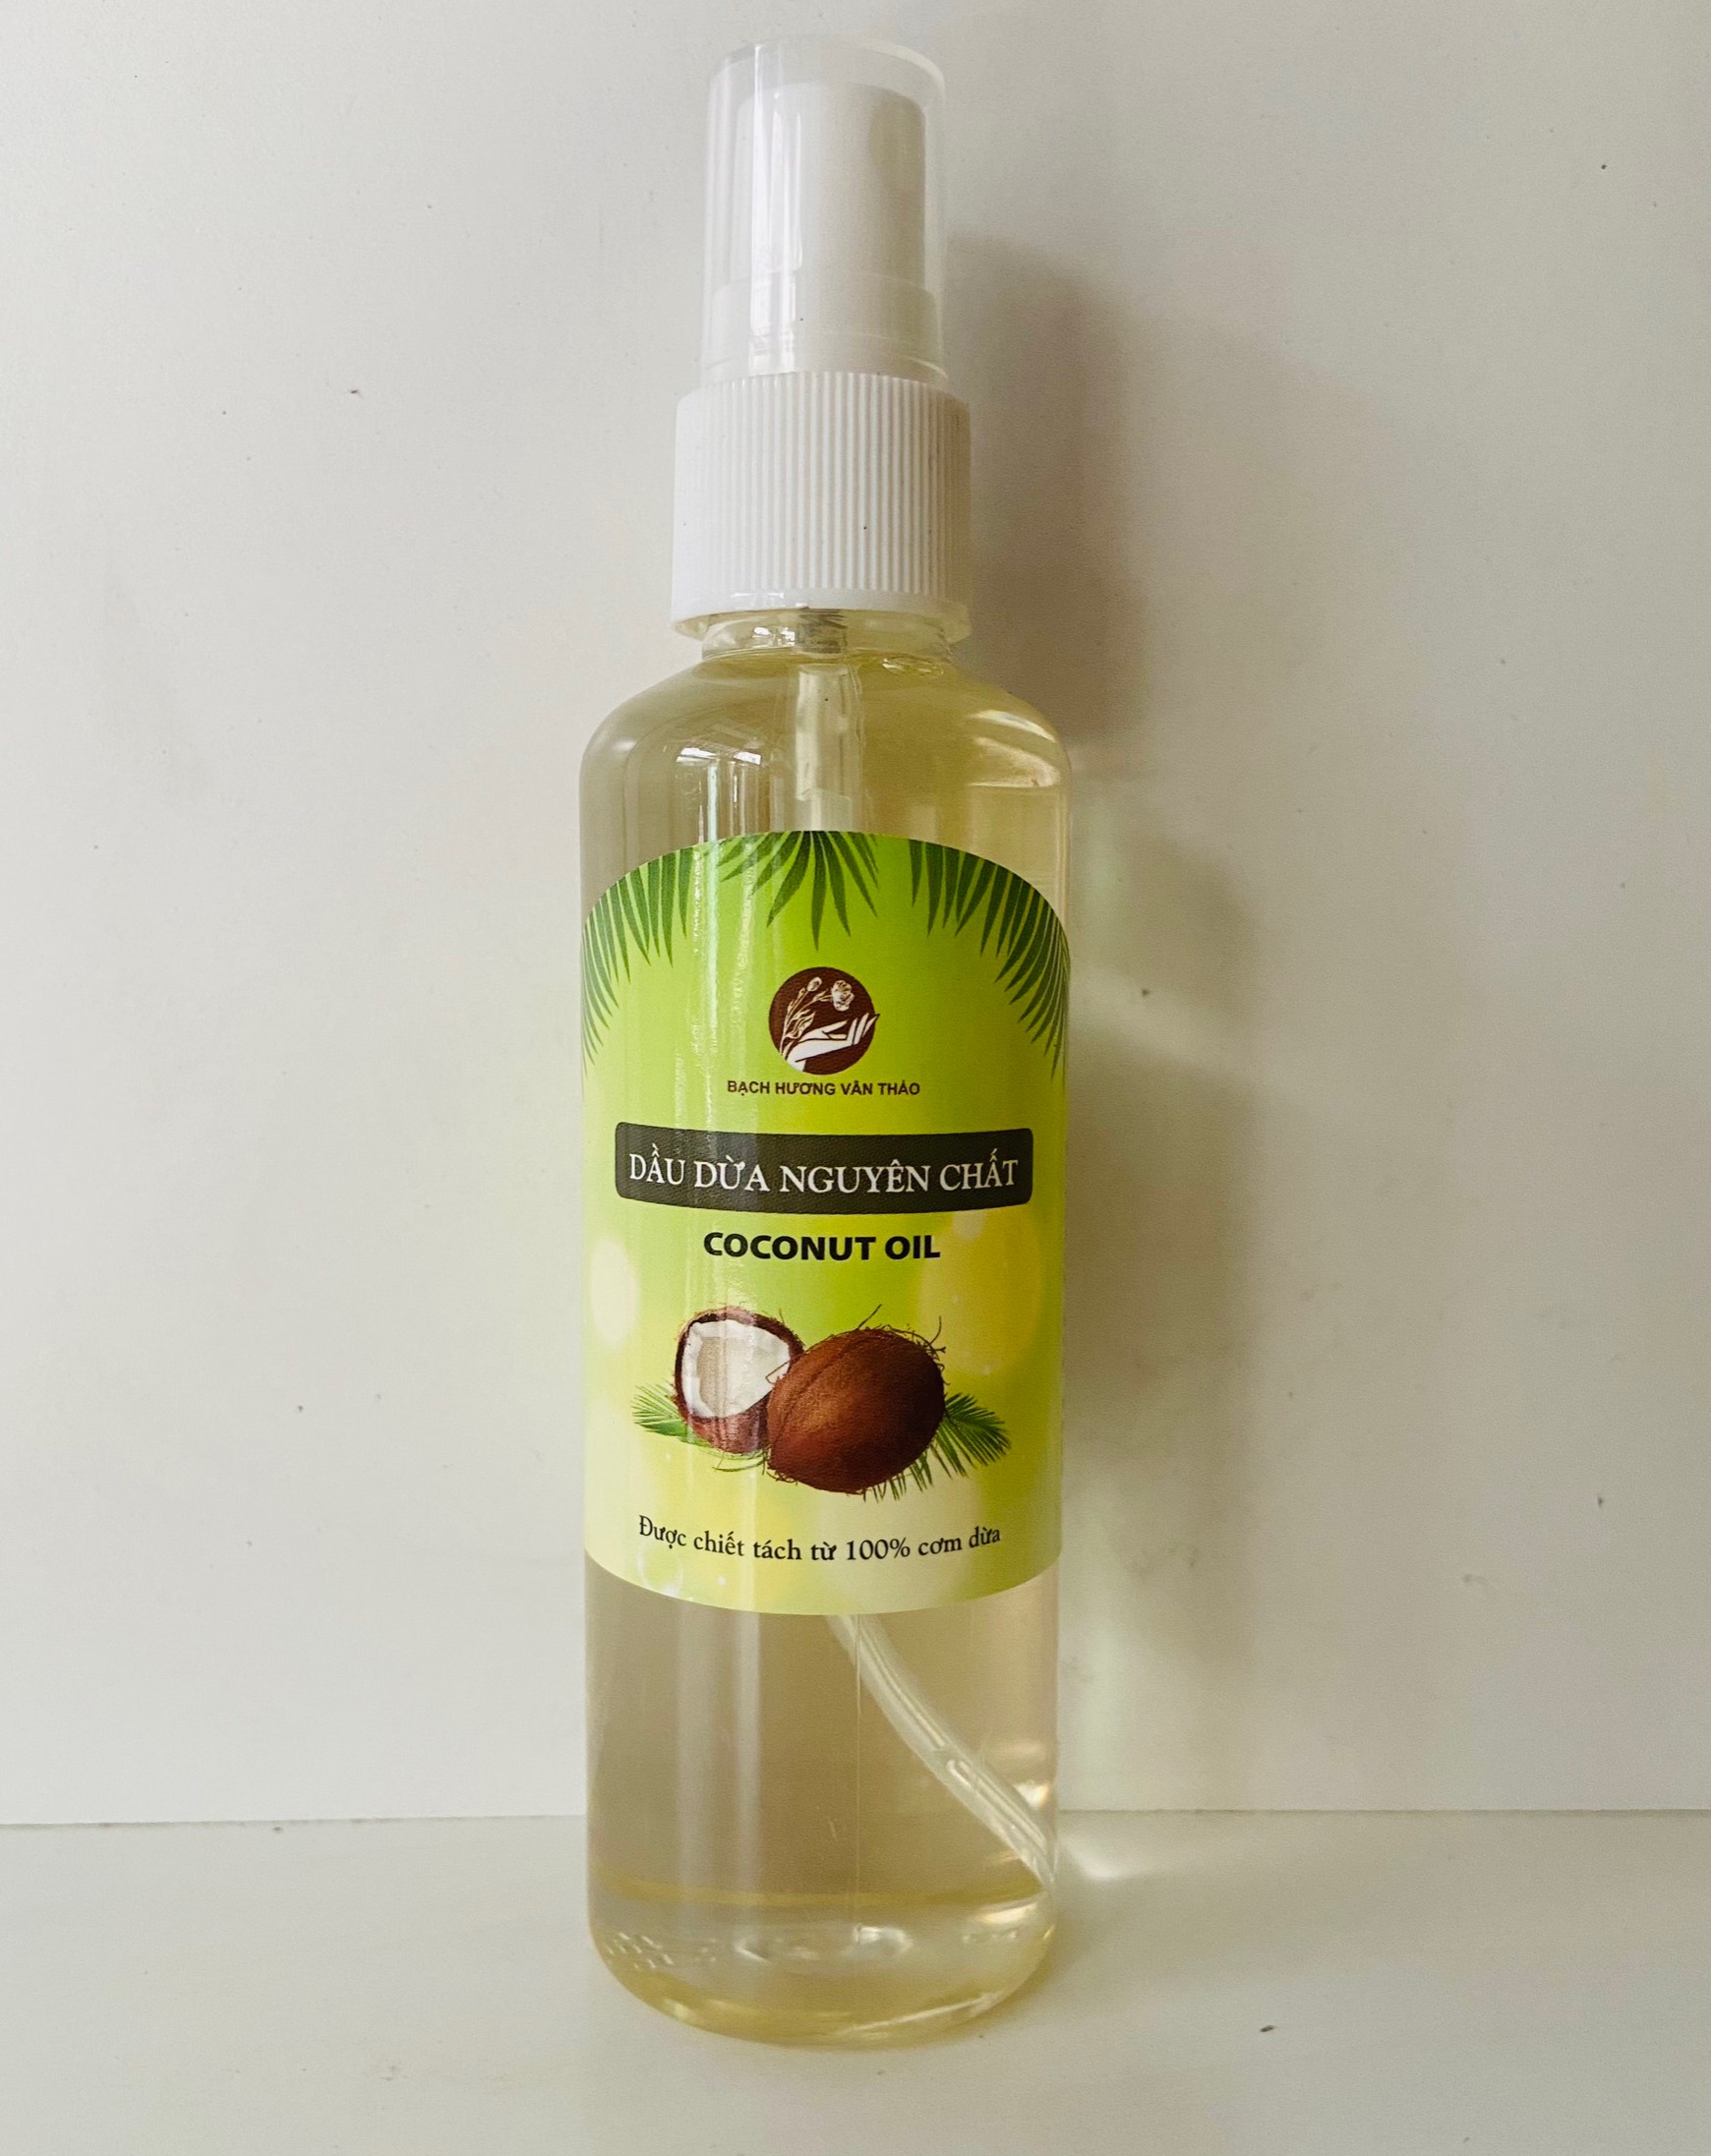 Dầu dừa nguyên chất , original Coconut oil , dầu nền mỹ phẩm, làm xà phòng, handmade soap , dưỡng mi dài, dầu massage, dưỡng da, nguyên liệu mỹ phẩm, BẠCH HƯƠNG VÂN THẢO